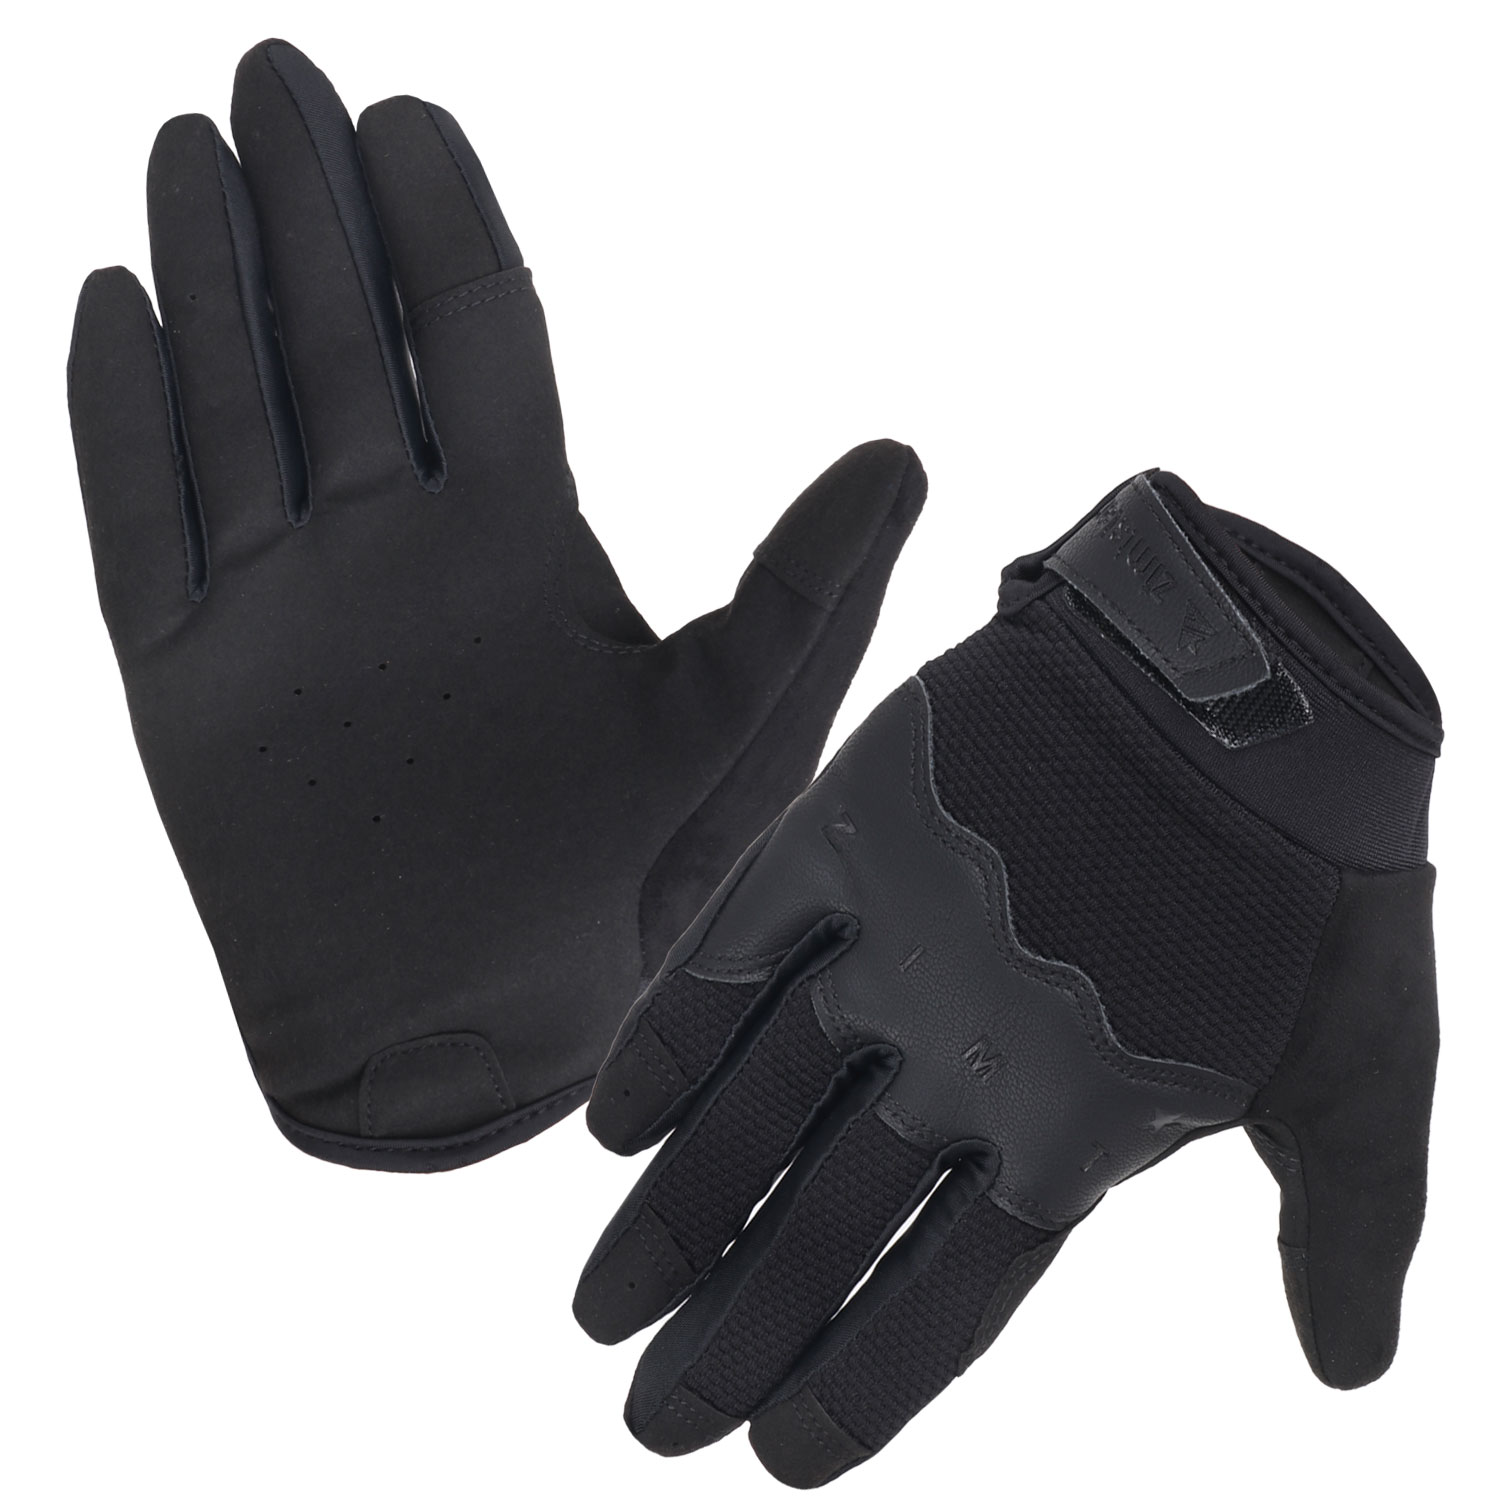 Picture of Zimtstern Trailz MTB Gloves - Pirate Black/Gun Metal